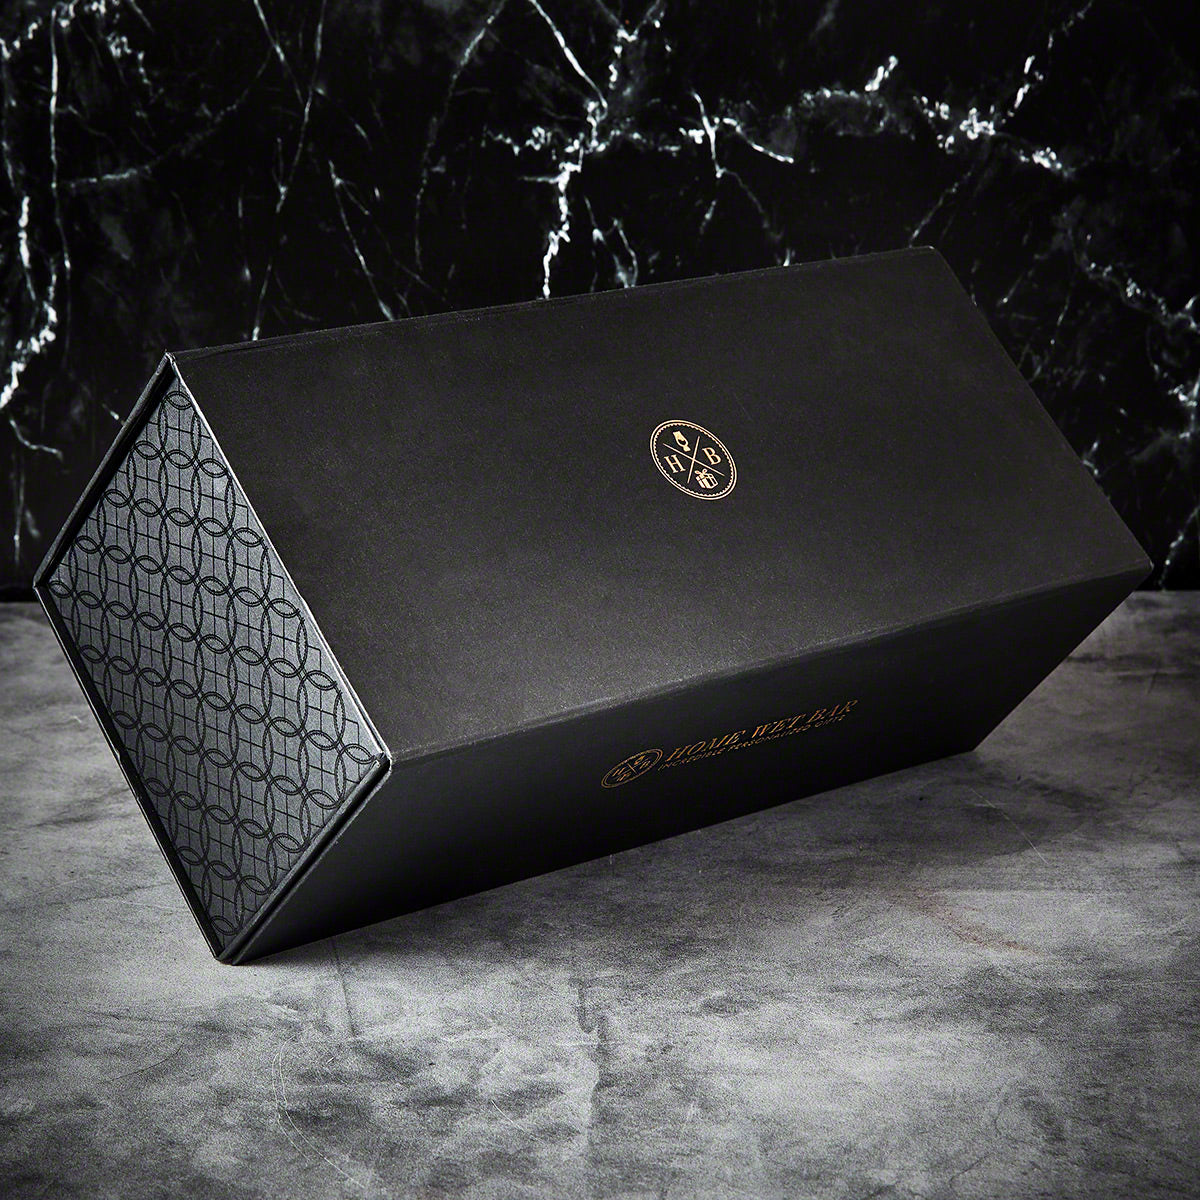 Custom Luxury Glencairn 9 pc Whiskey Gift Set